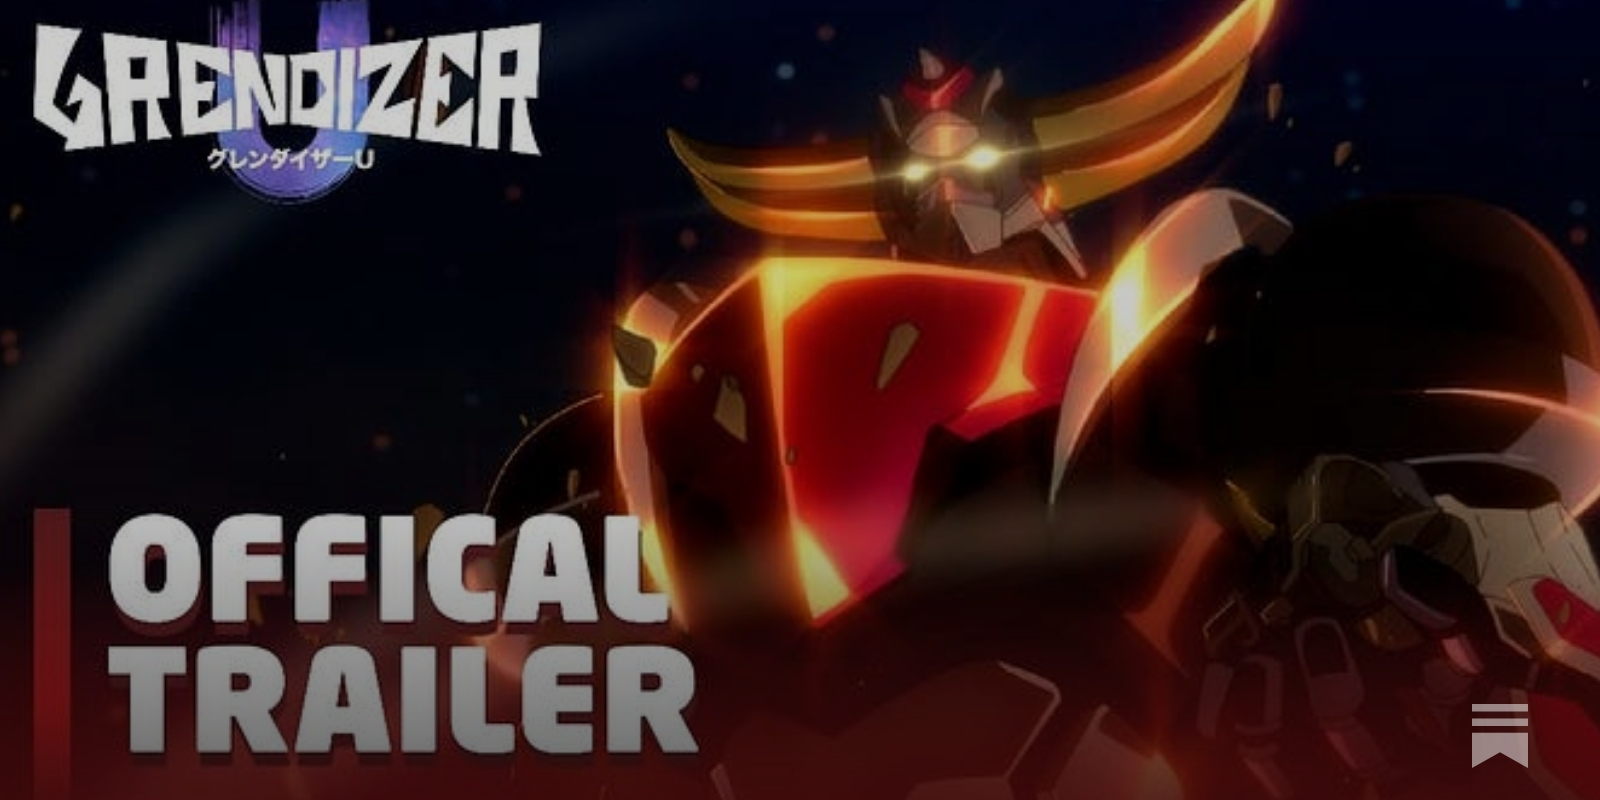 Grendizer U  Official Teaser 